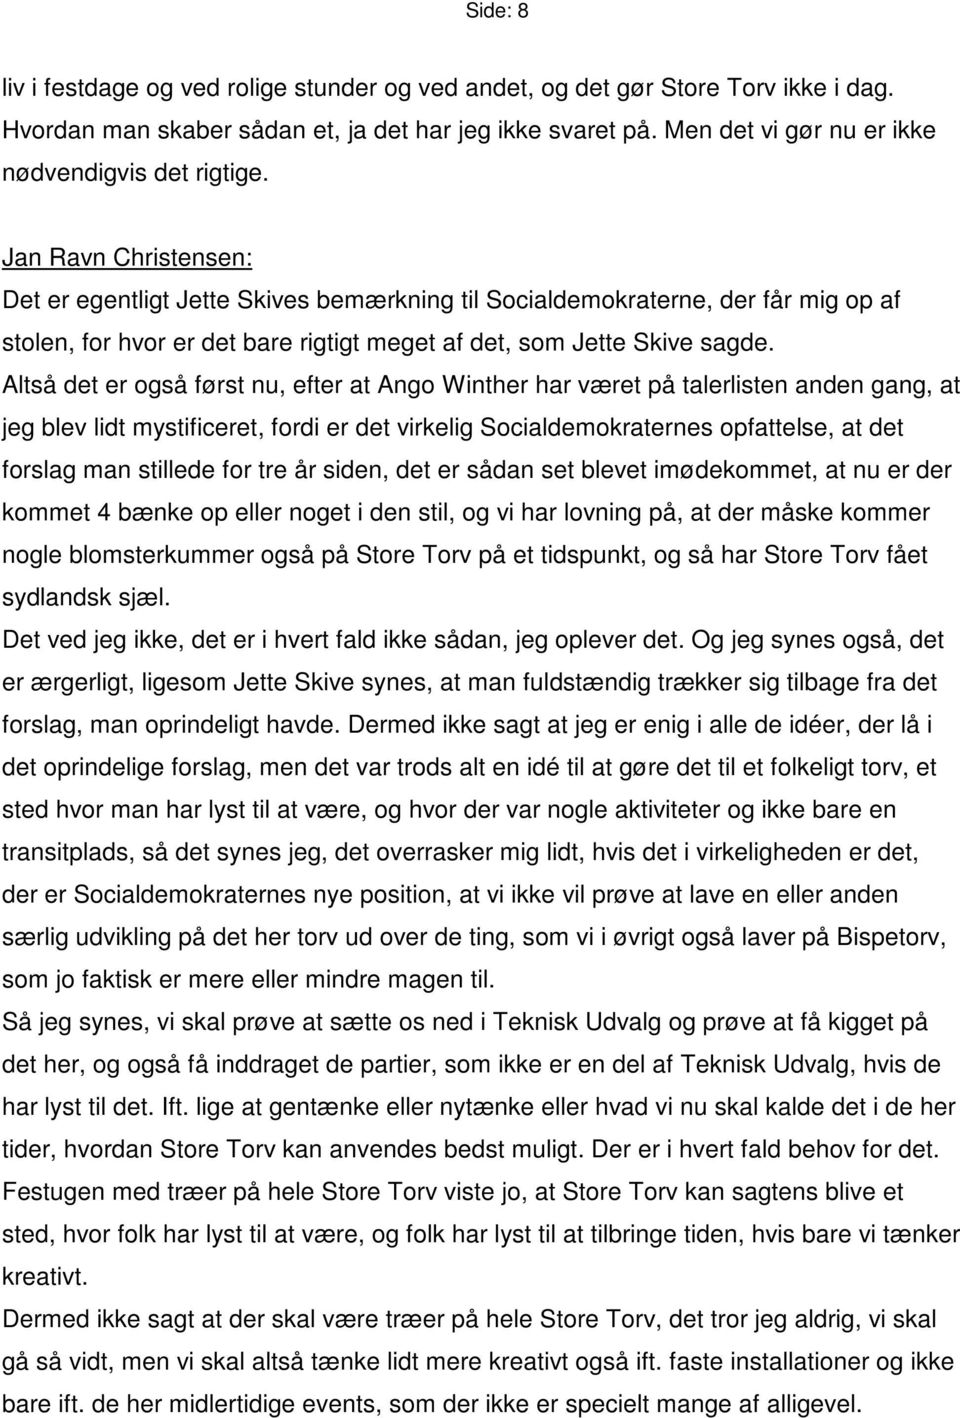 Jan Ravn Christensen: Det er egentligt Jette Skives bemærkning til Socialdemokraterne, der får mig op af stolen, for hvor er det bare rigtigt meget af det, som Jette Skive sagde.